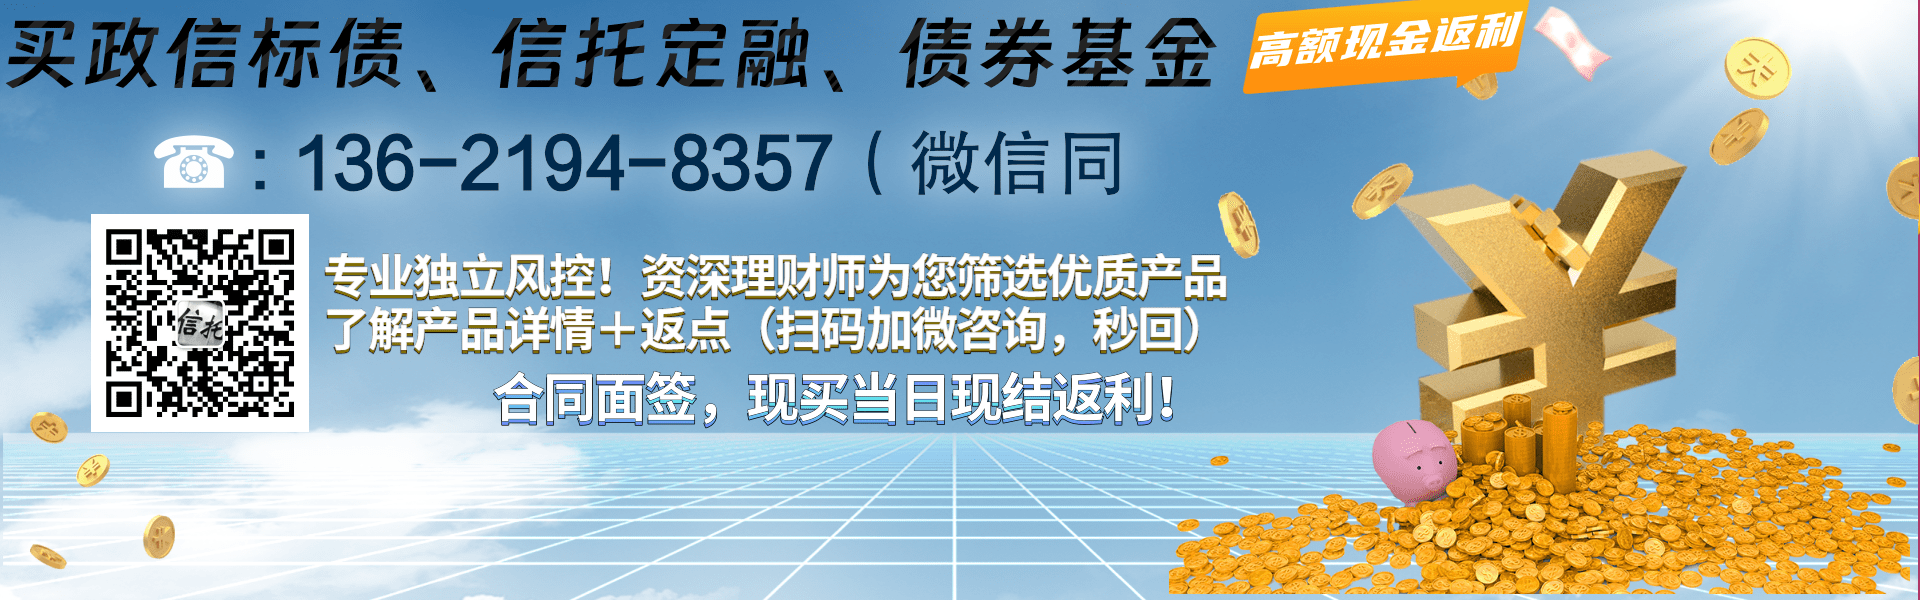 山东枣庄薛城区城市建设2023债权资产项目